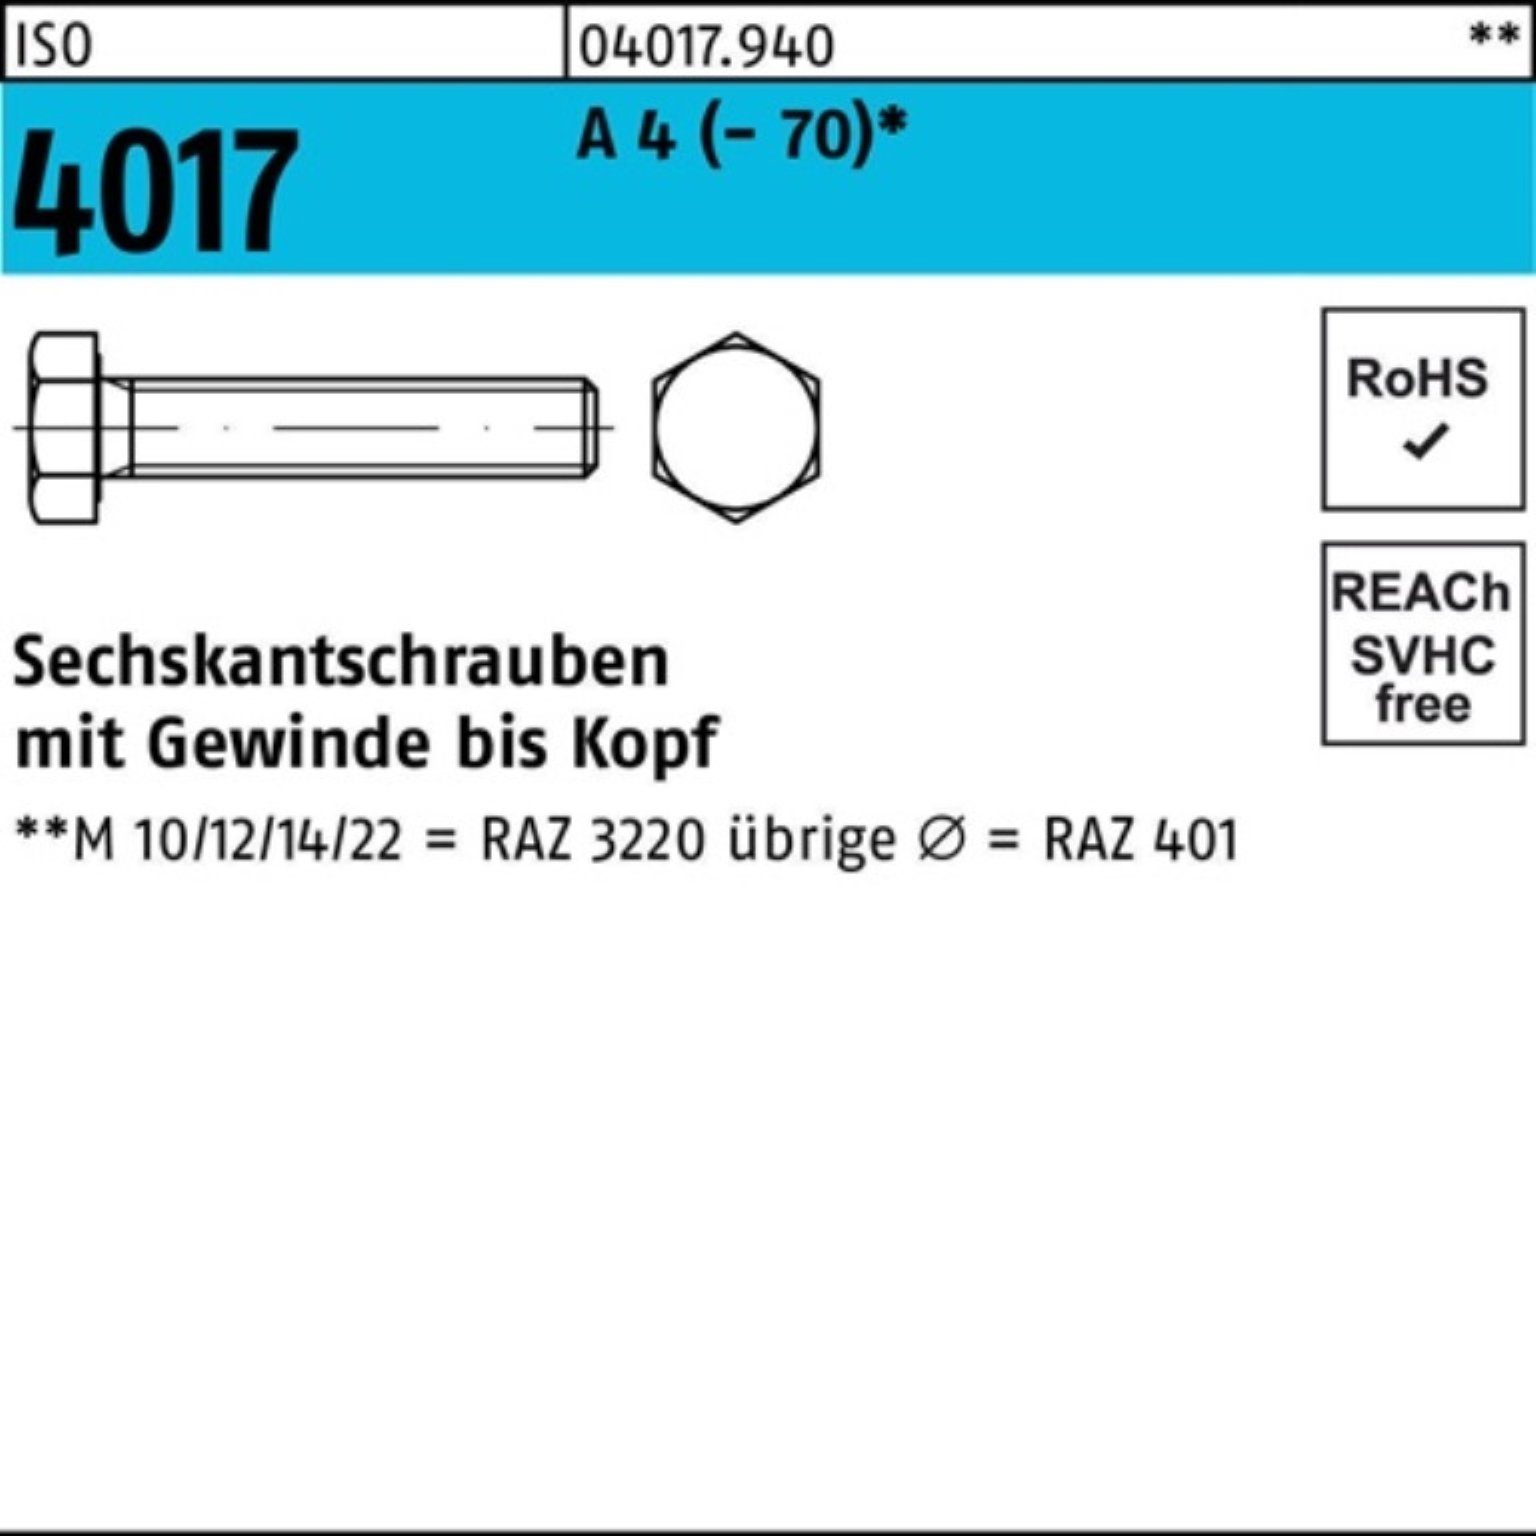 Bufab Sechskantschraube 500er Pack Sechskantschraube ISO 4017 VG M5x 16 A 4 (70) 500 Stück